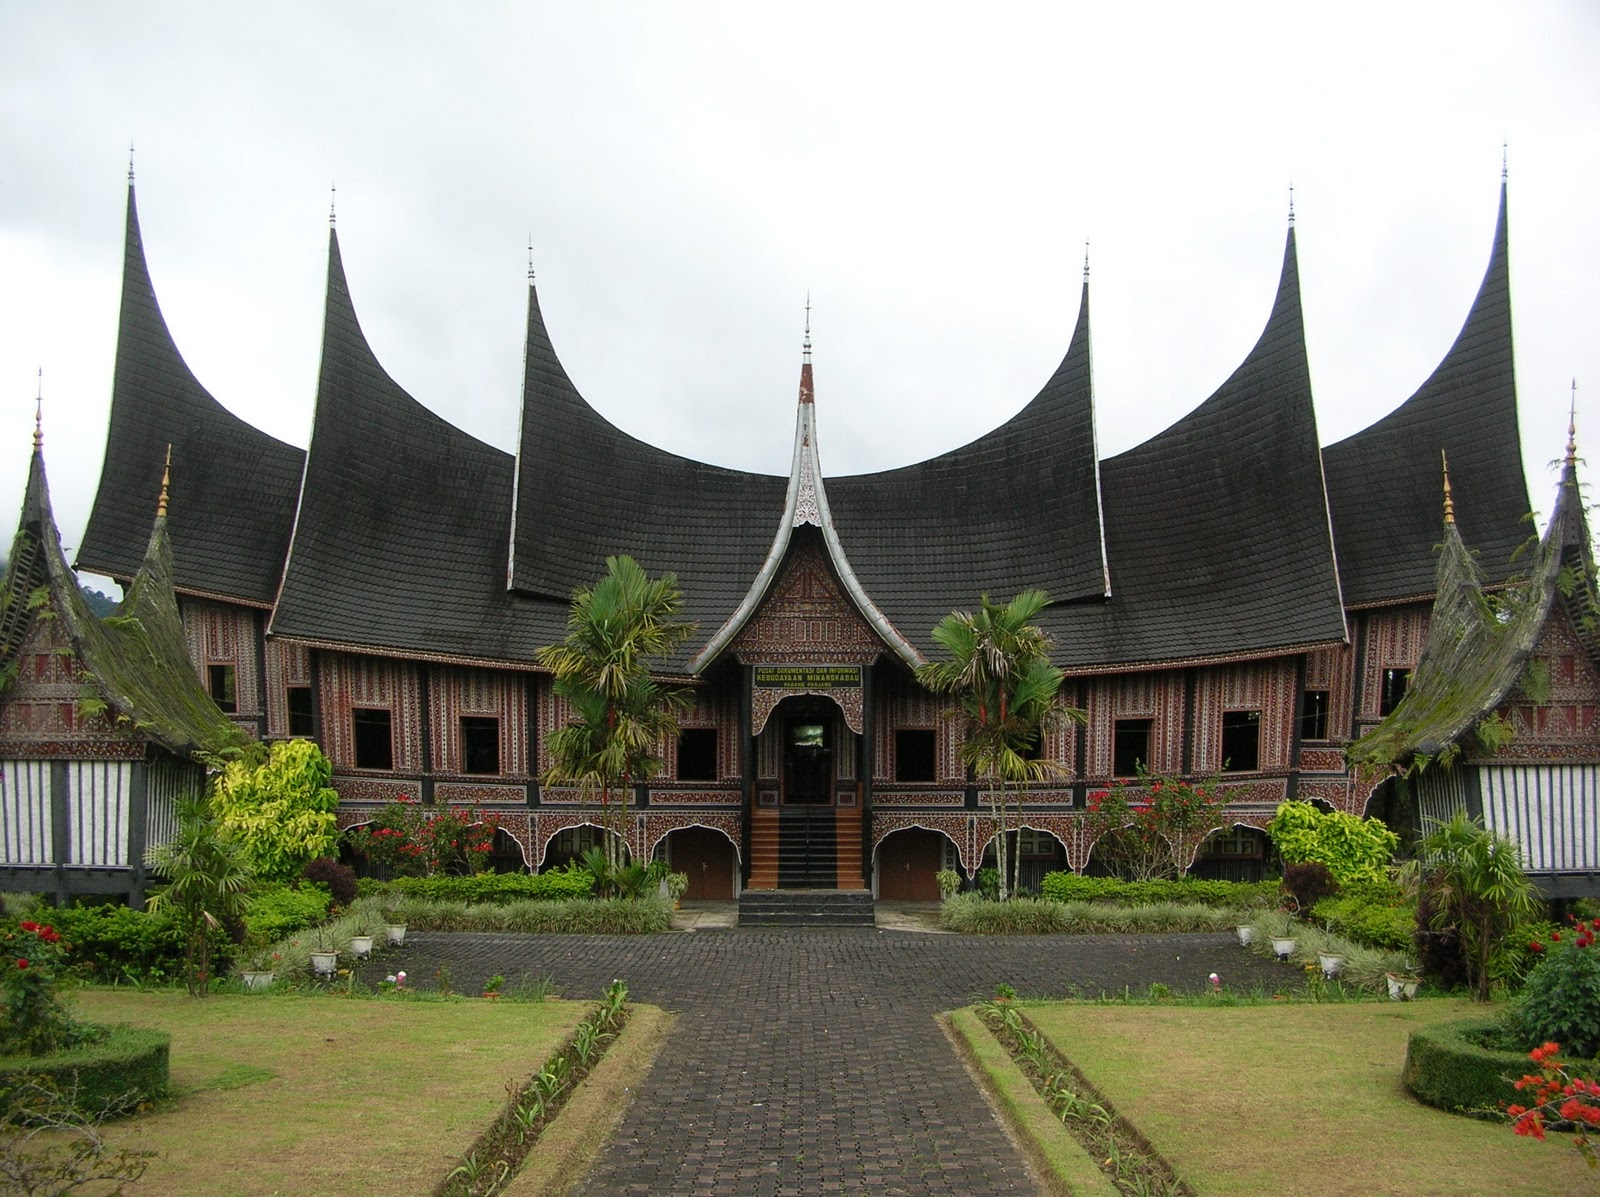  Rumah Adat Nusantara  Tuty Handayani